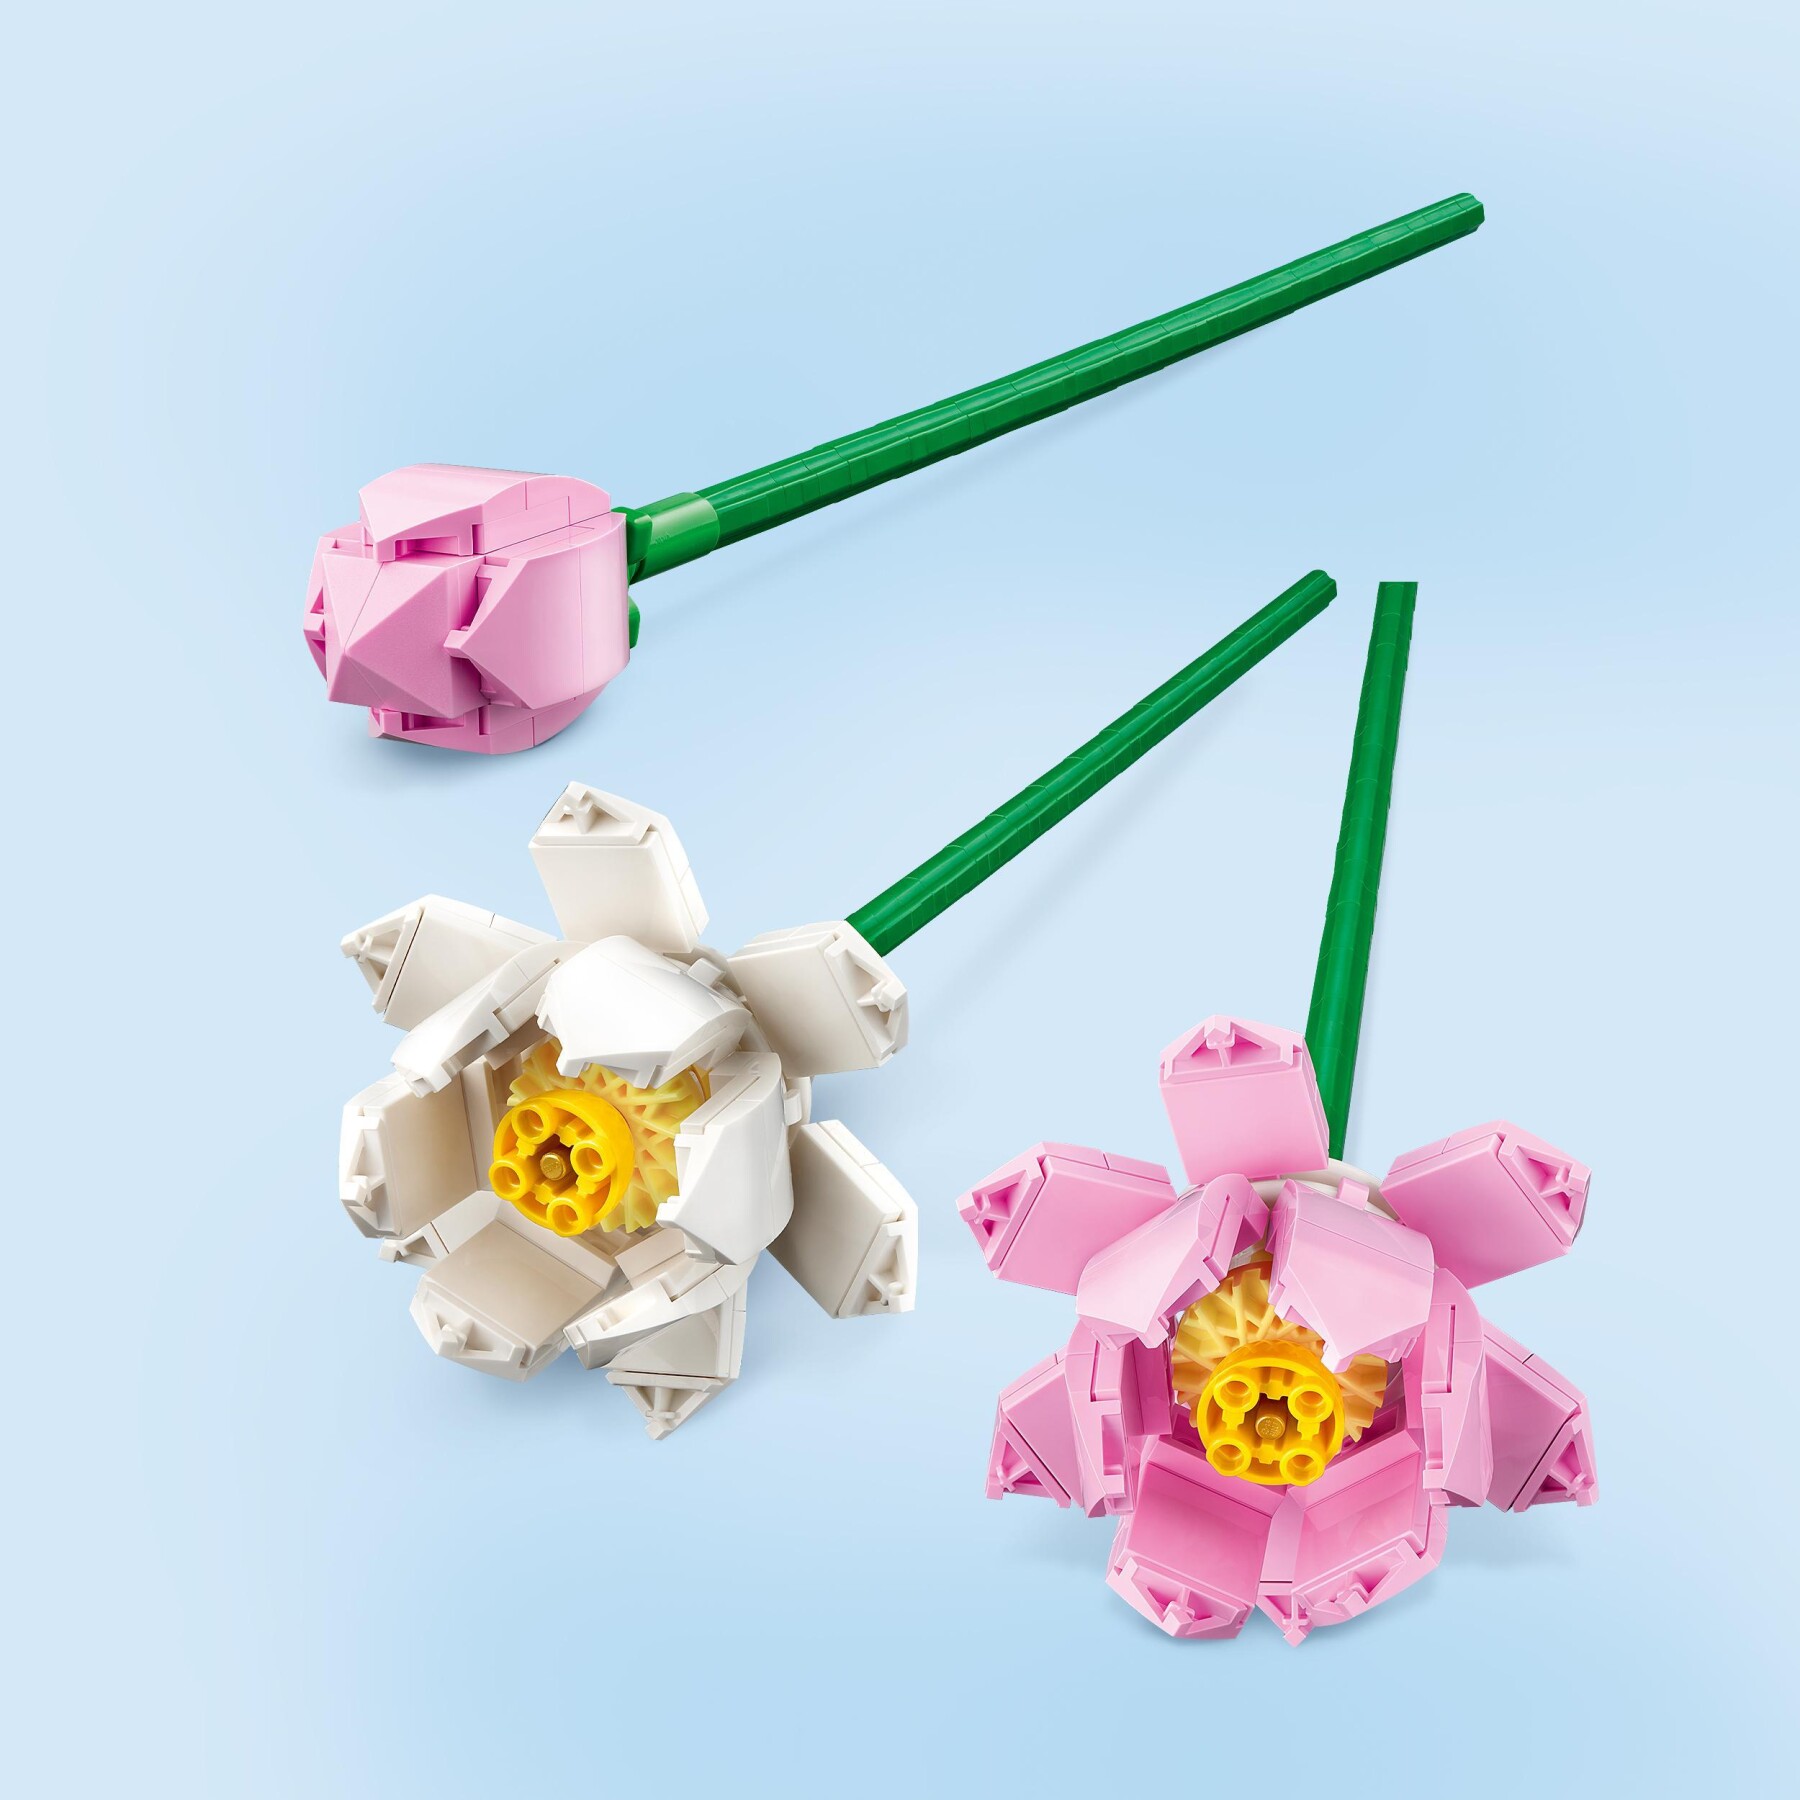 Lego creator 40647 fiori di loto, fiori finti per bambini da 8+, bouquet regalo per san valentino, per lei o lui, donna o uomo - LEGO CREATOR